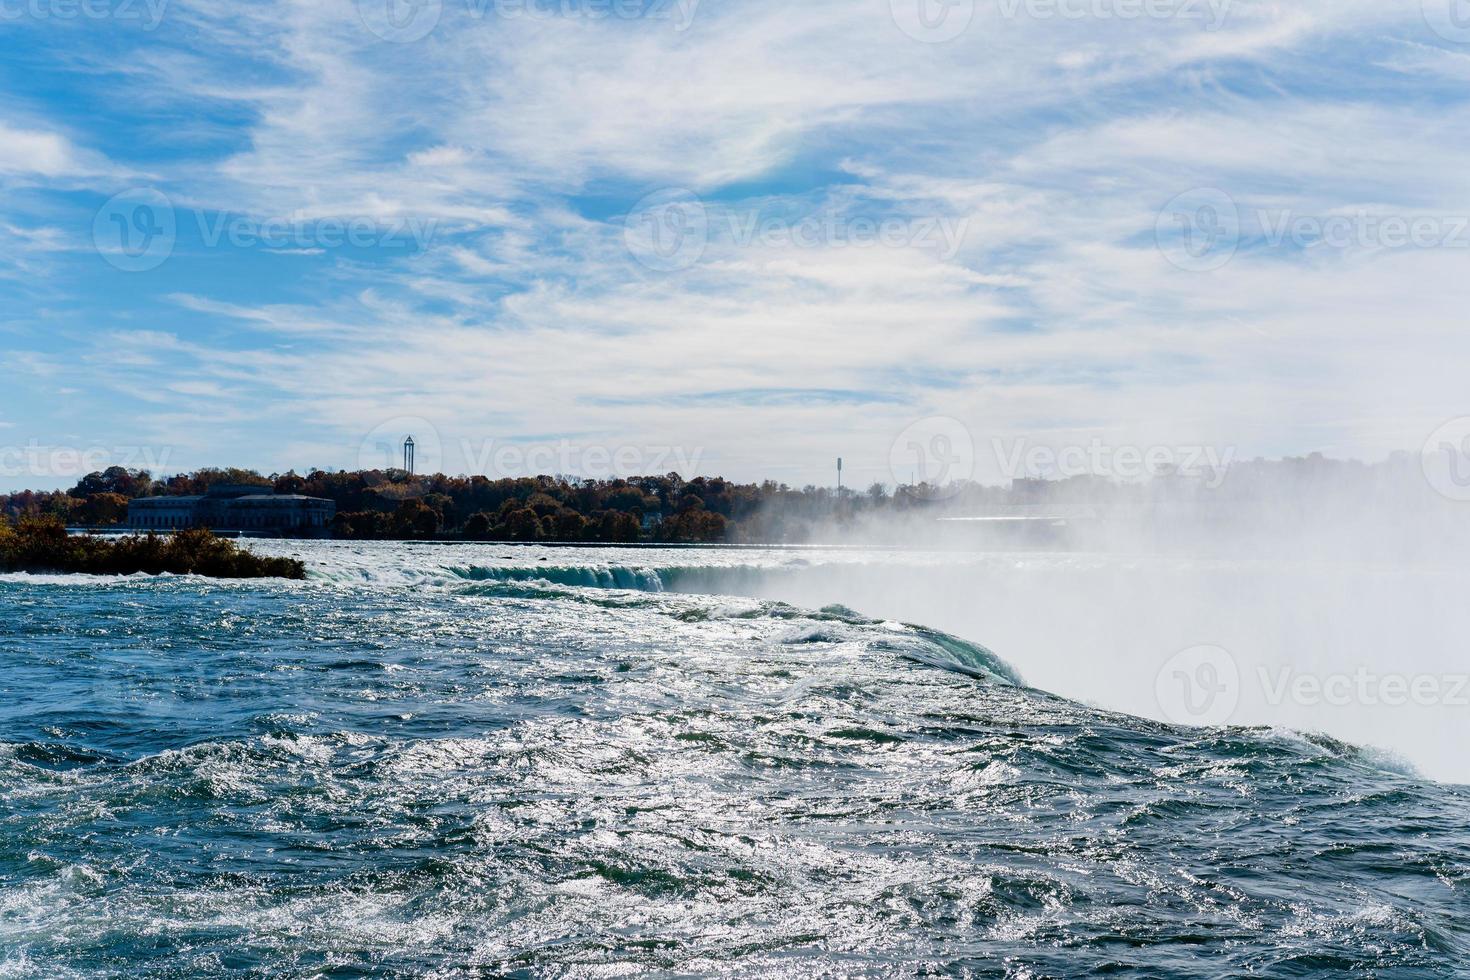 les chutes du niagara du côté américain et canadien. arc-en-ciel au-dessus de la cascade. l'endroit touristique le plus populaire. rivière orageuse qui se jette dans le lac. photo